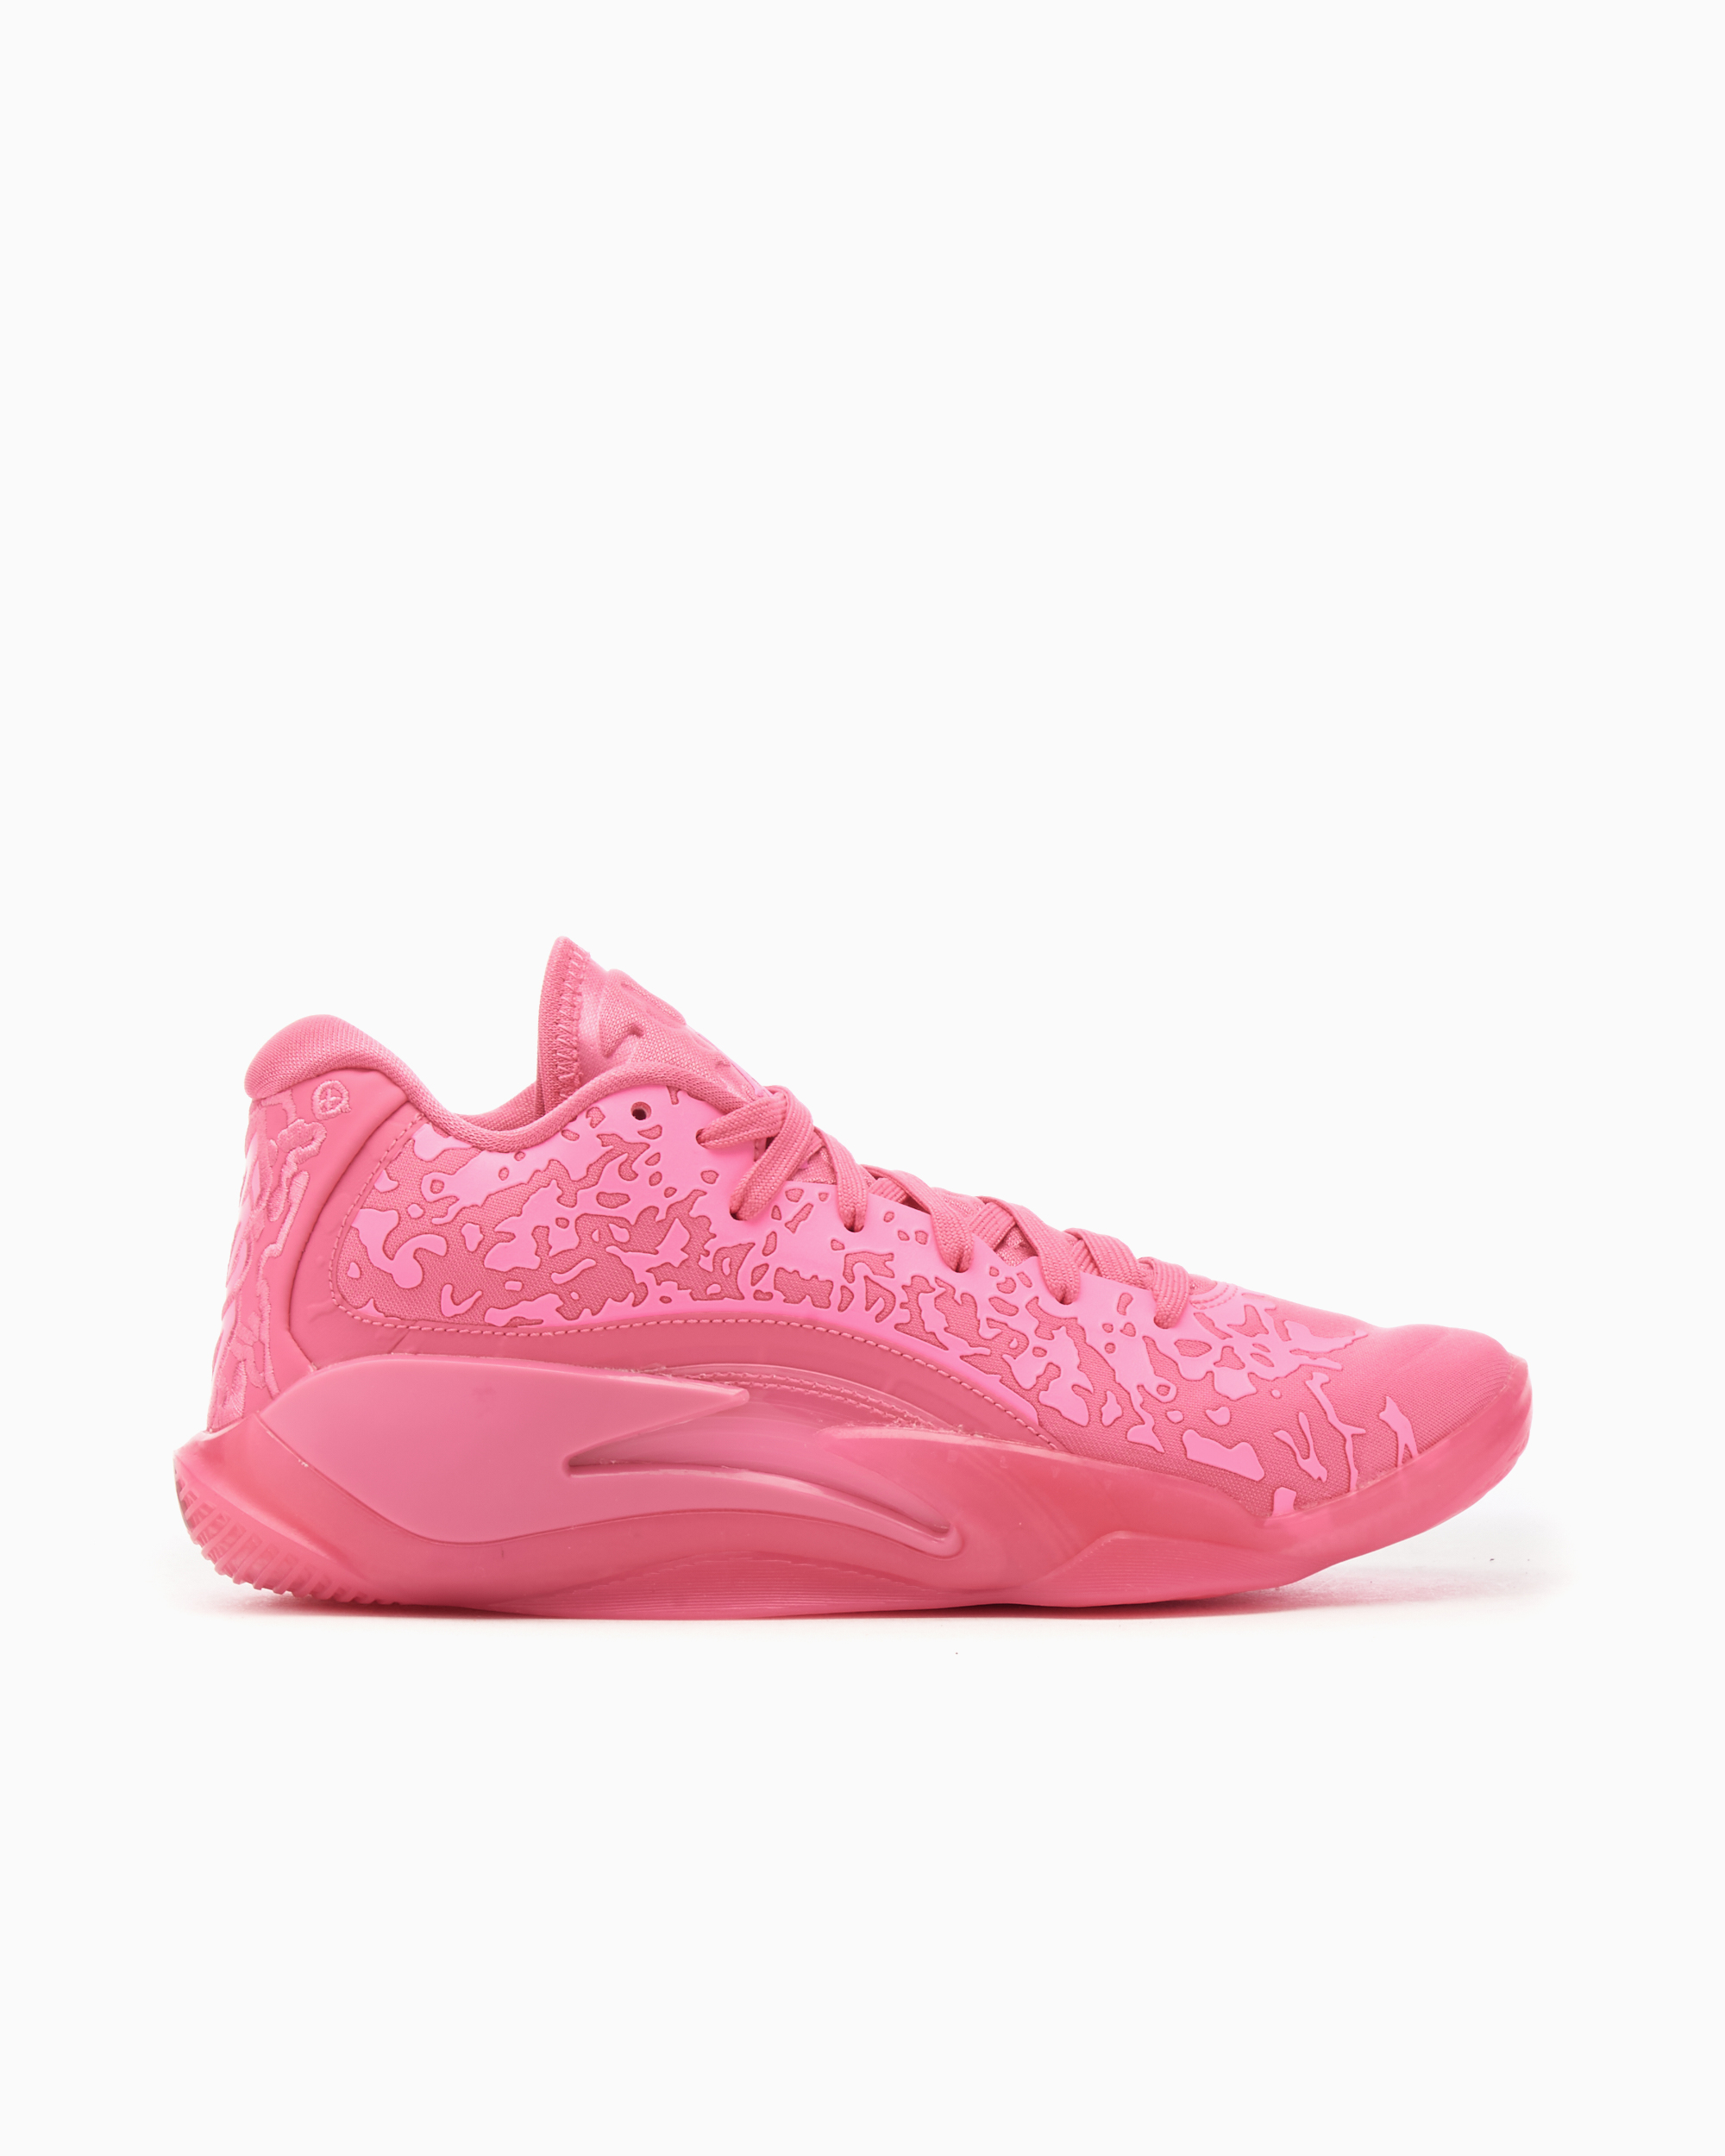 Comprar en oferta Nike Zion 3 Basketball Shoe for older kids pink